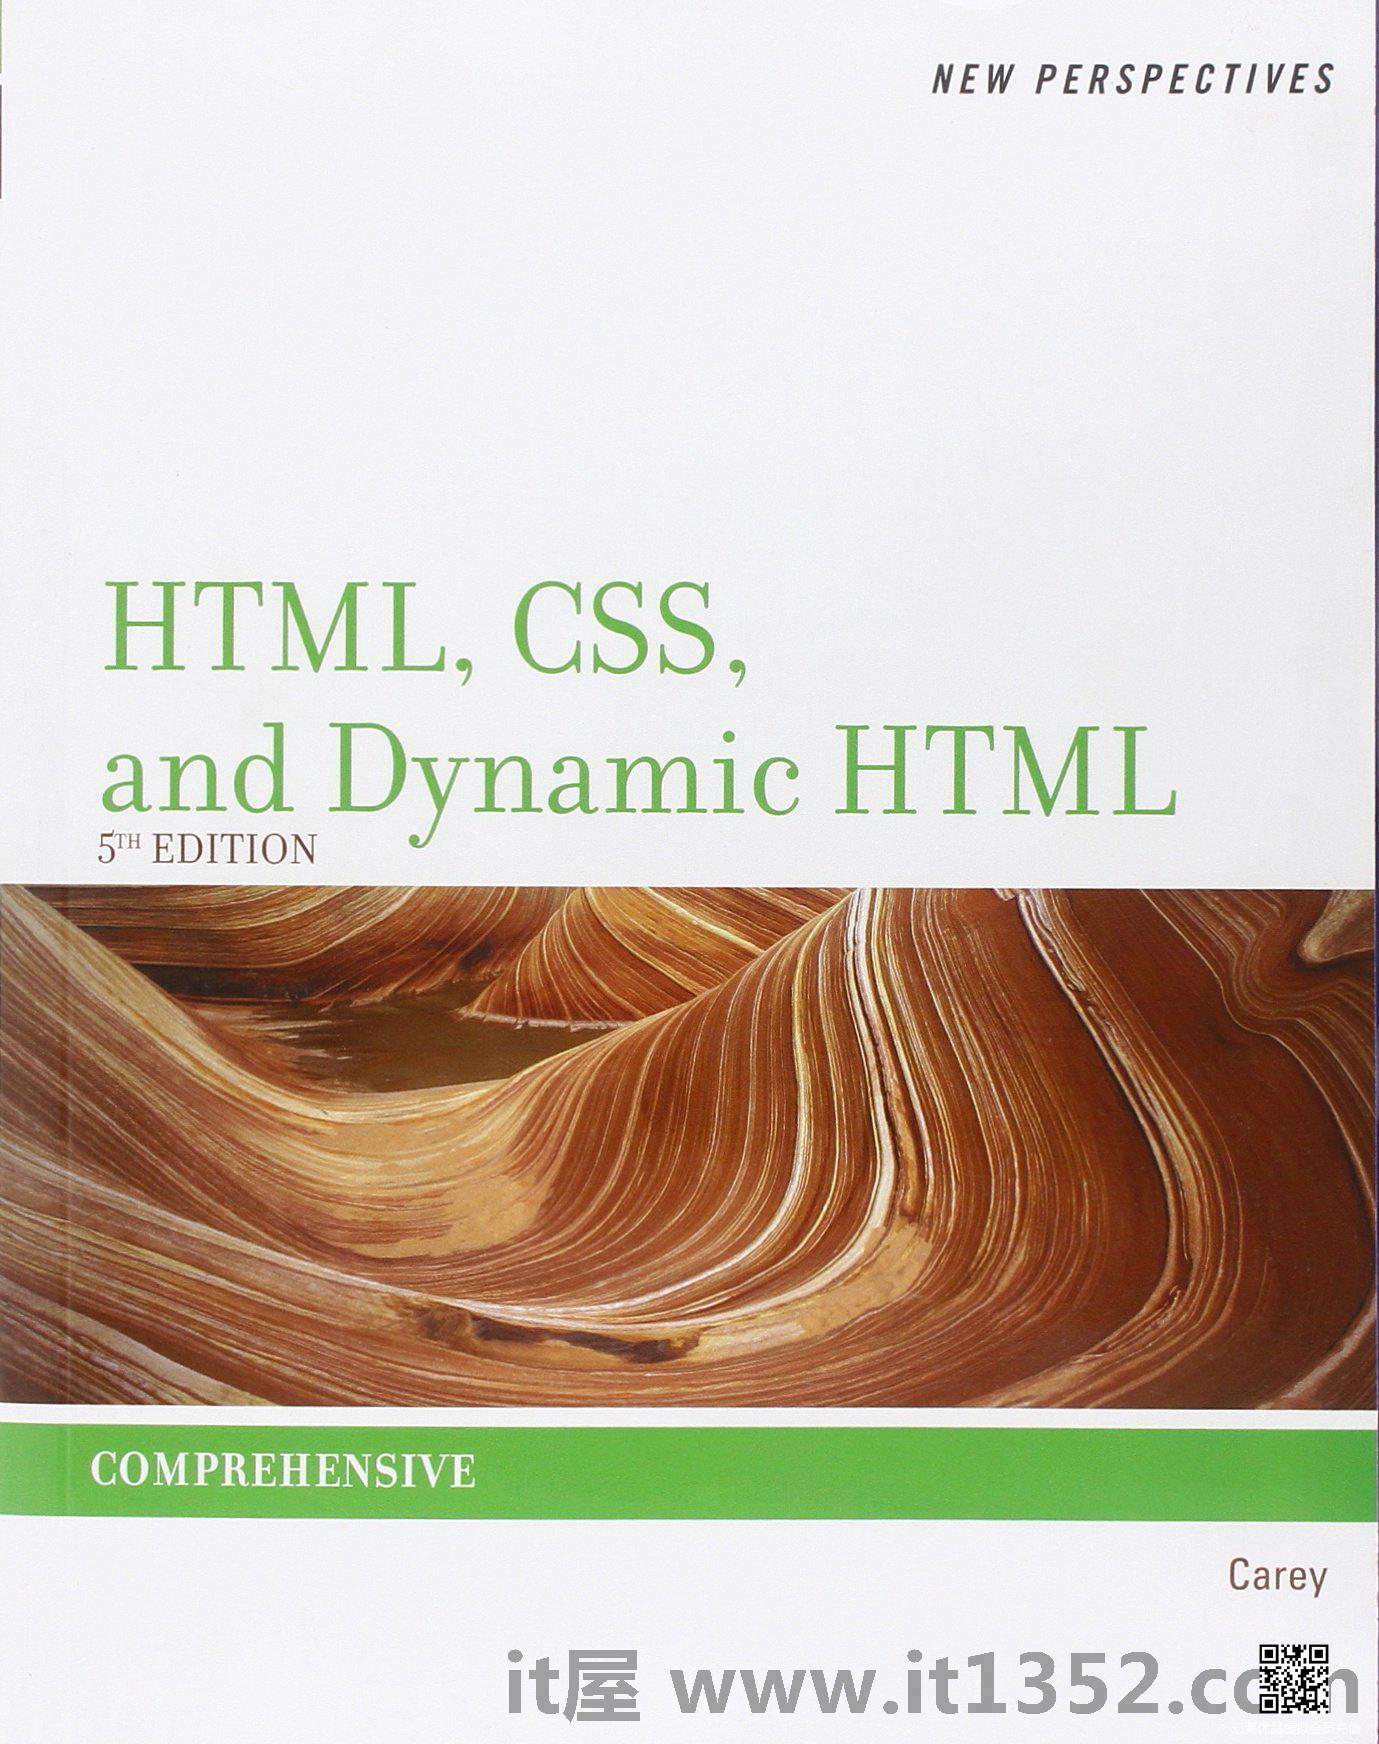 关于HTML，CSS和动态HTML的新视角